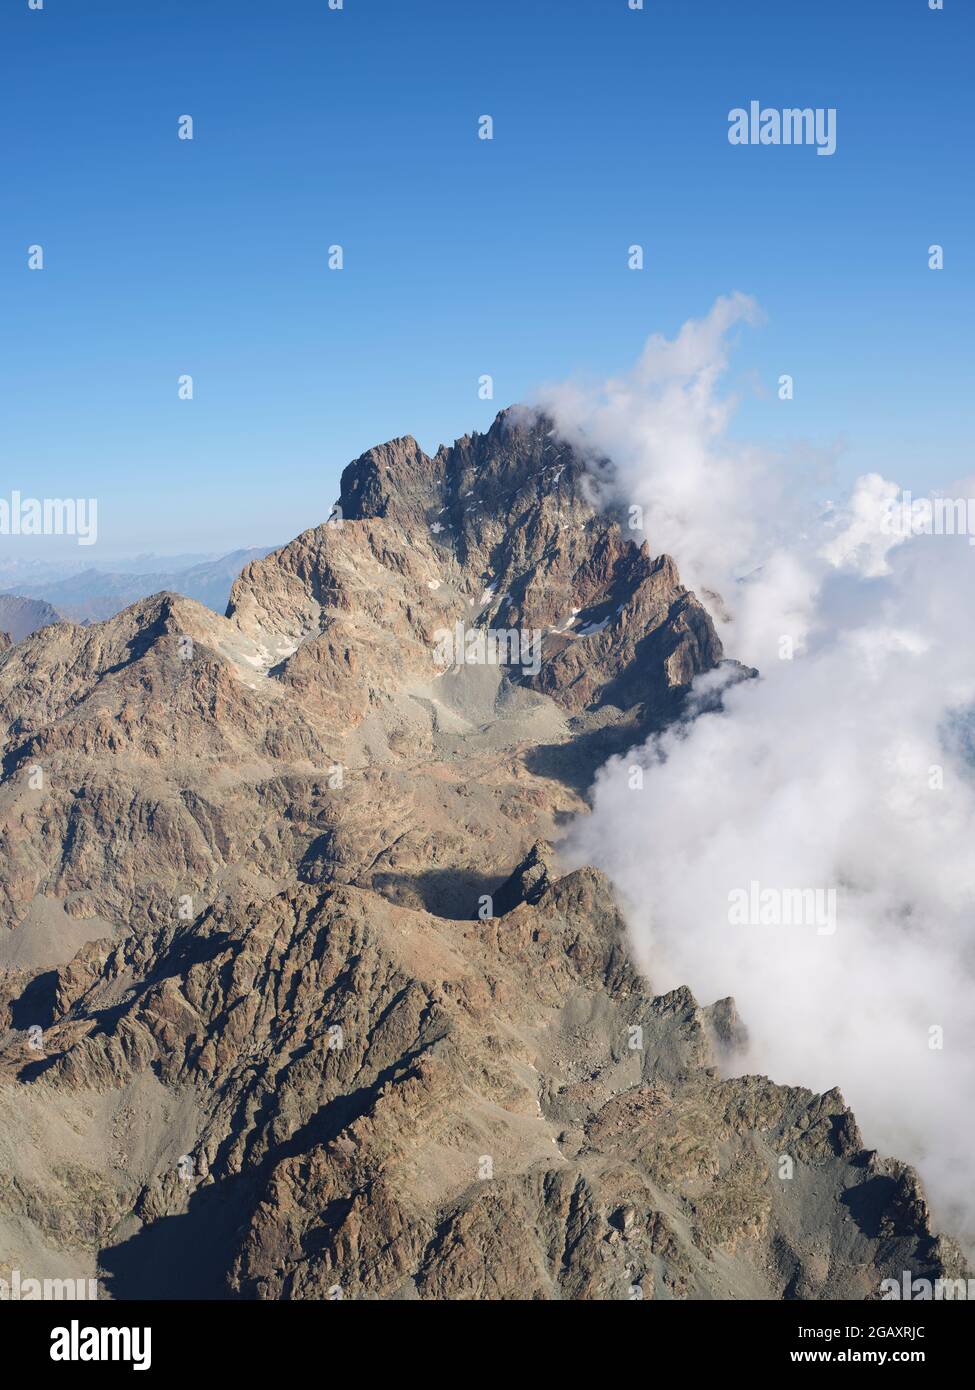 LUFTAUFNAHME. Südliche, zerklüftete Felswand des Monte Viso (3841m) mit Wolken östlich über der Po-Ebene. Provinz Cuneo, Piemont, Italien. Stockfoto